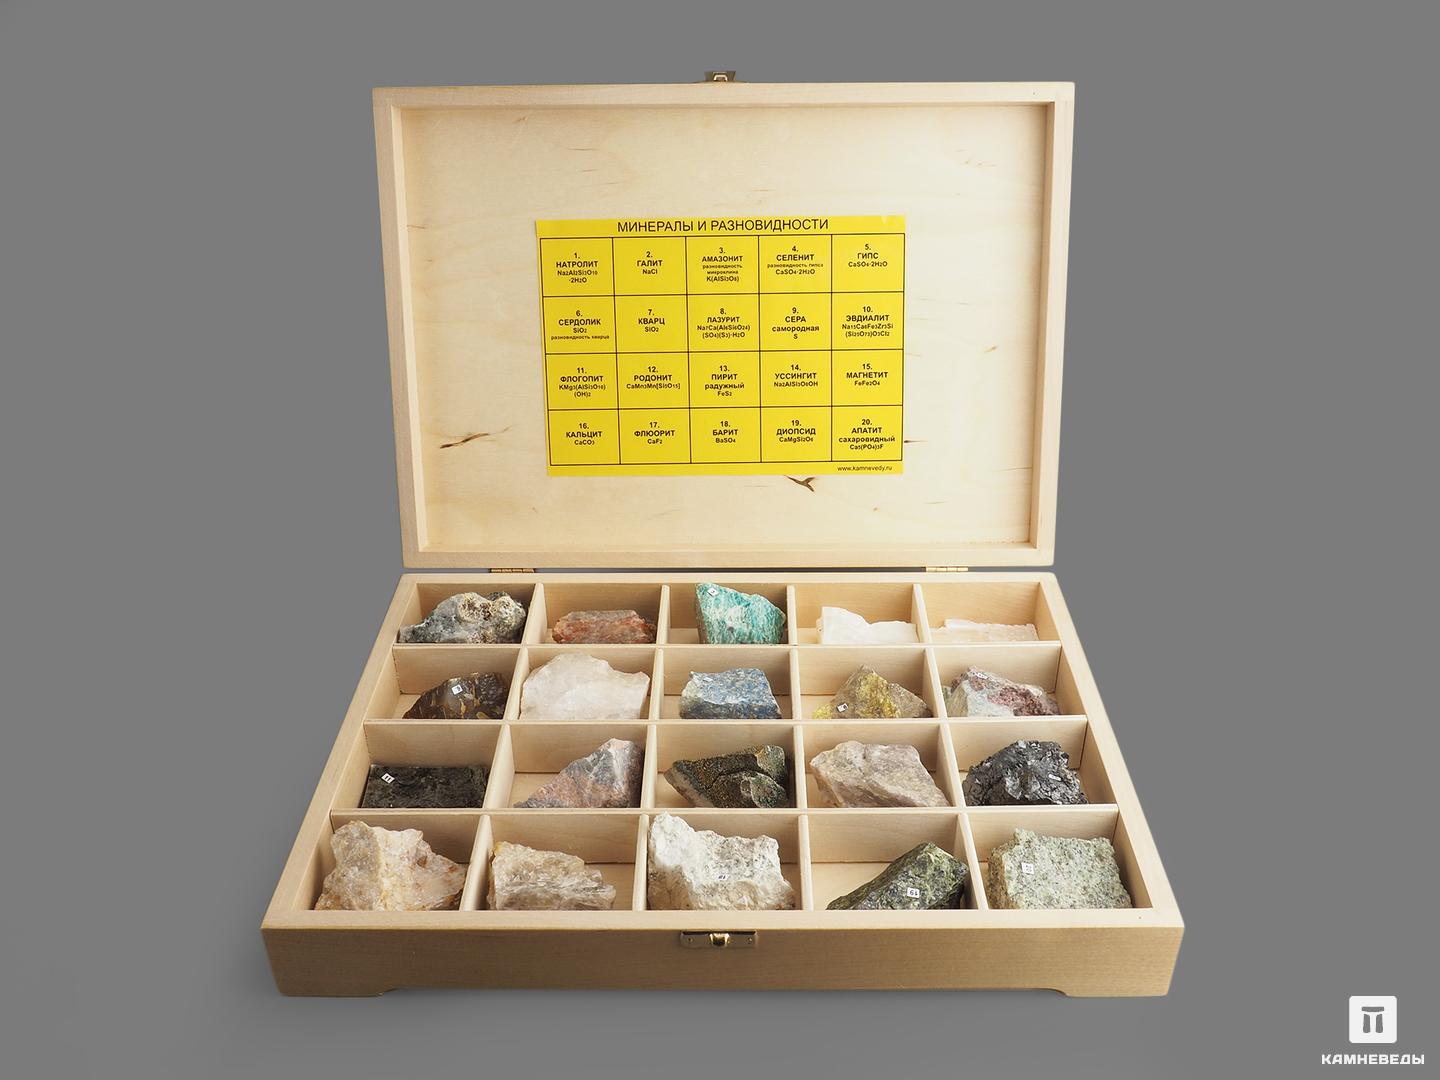 Коллекция минералов и разновидностей (20 образцов, состав №6) в деревянной коробке потерял сознание очнулся гипс